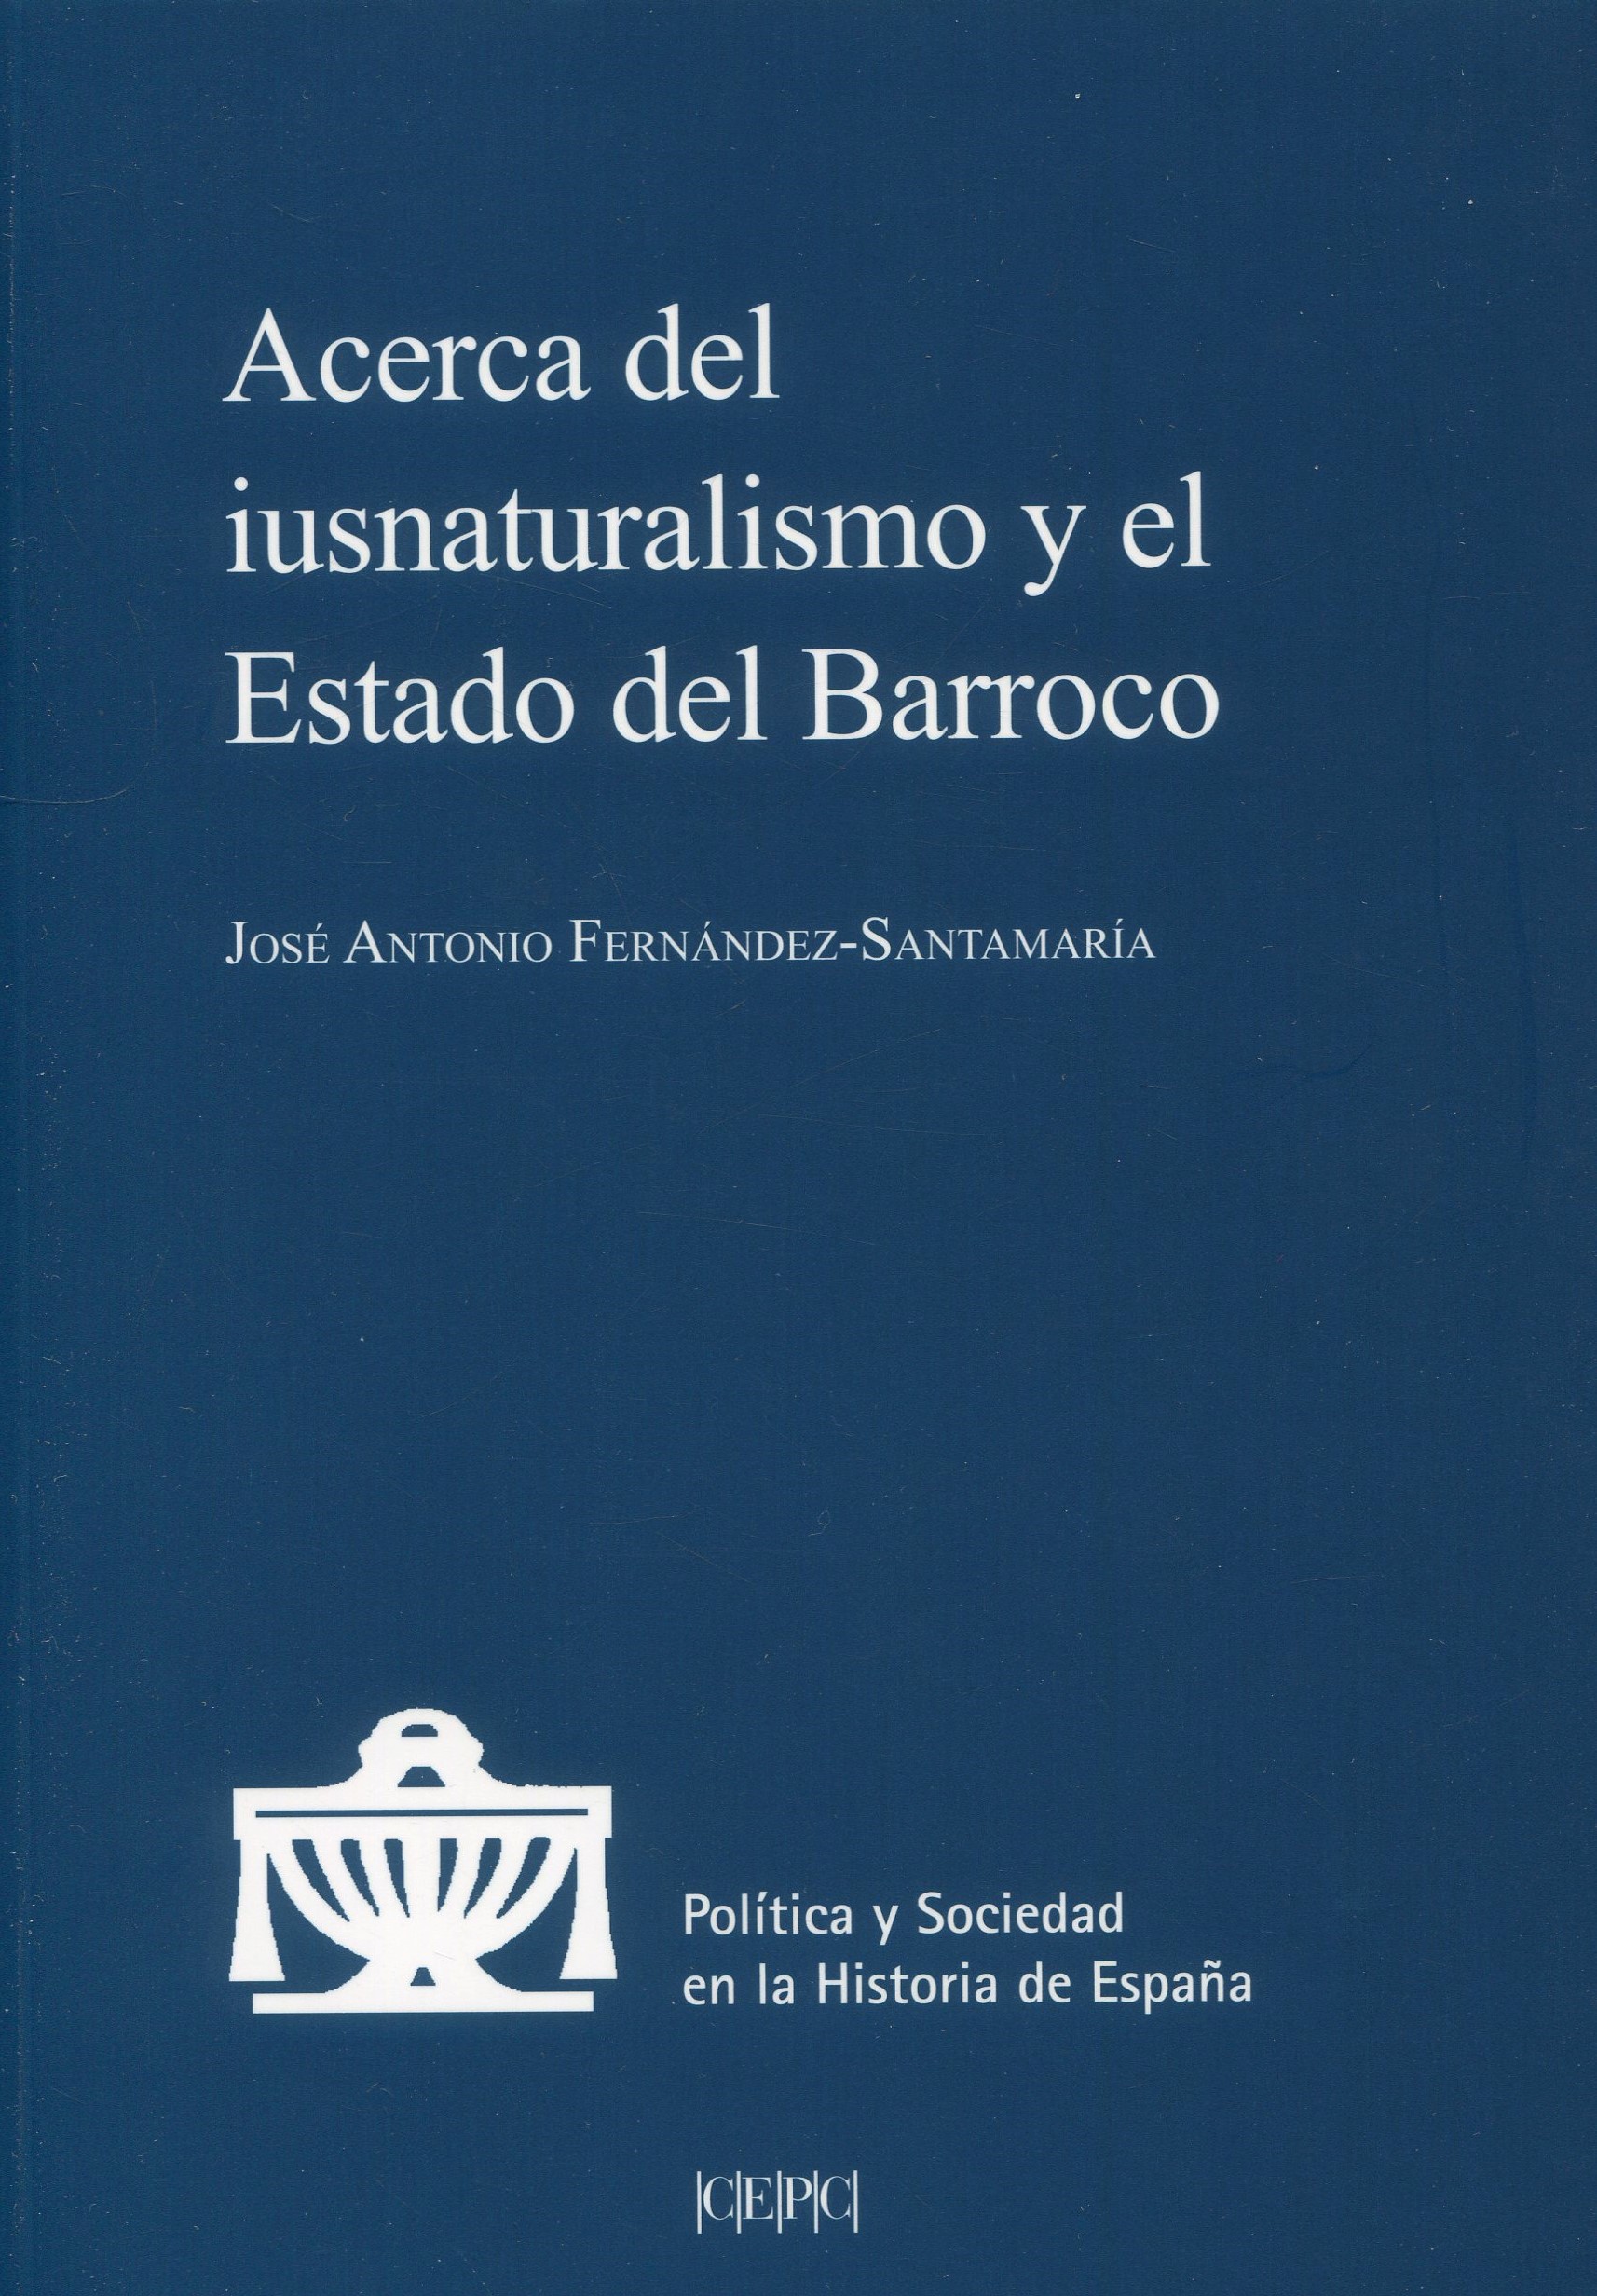 Acerca del iusnaturalismo y el Estado del Barroco 9788425919749